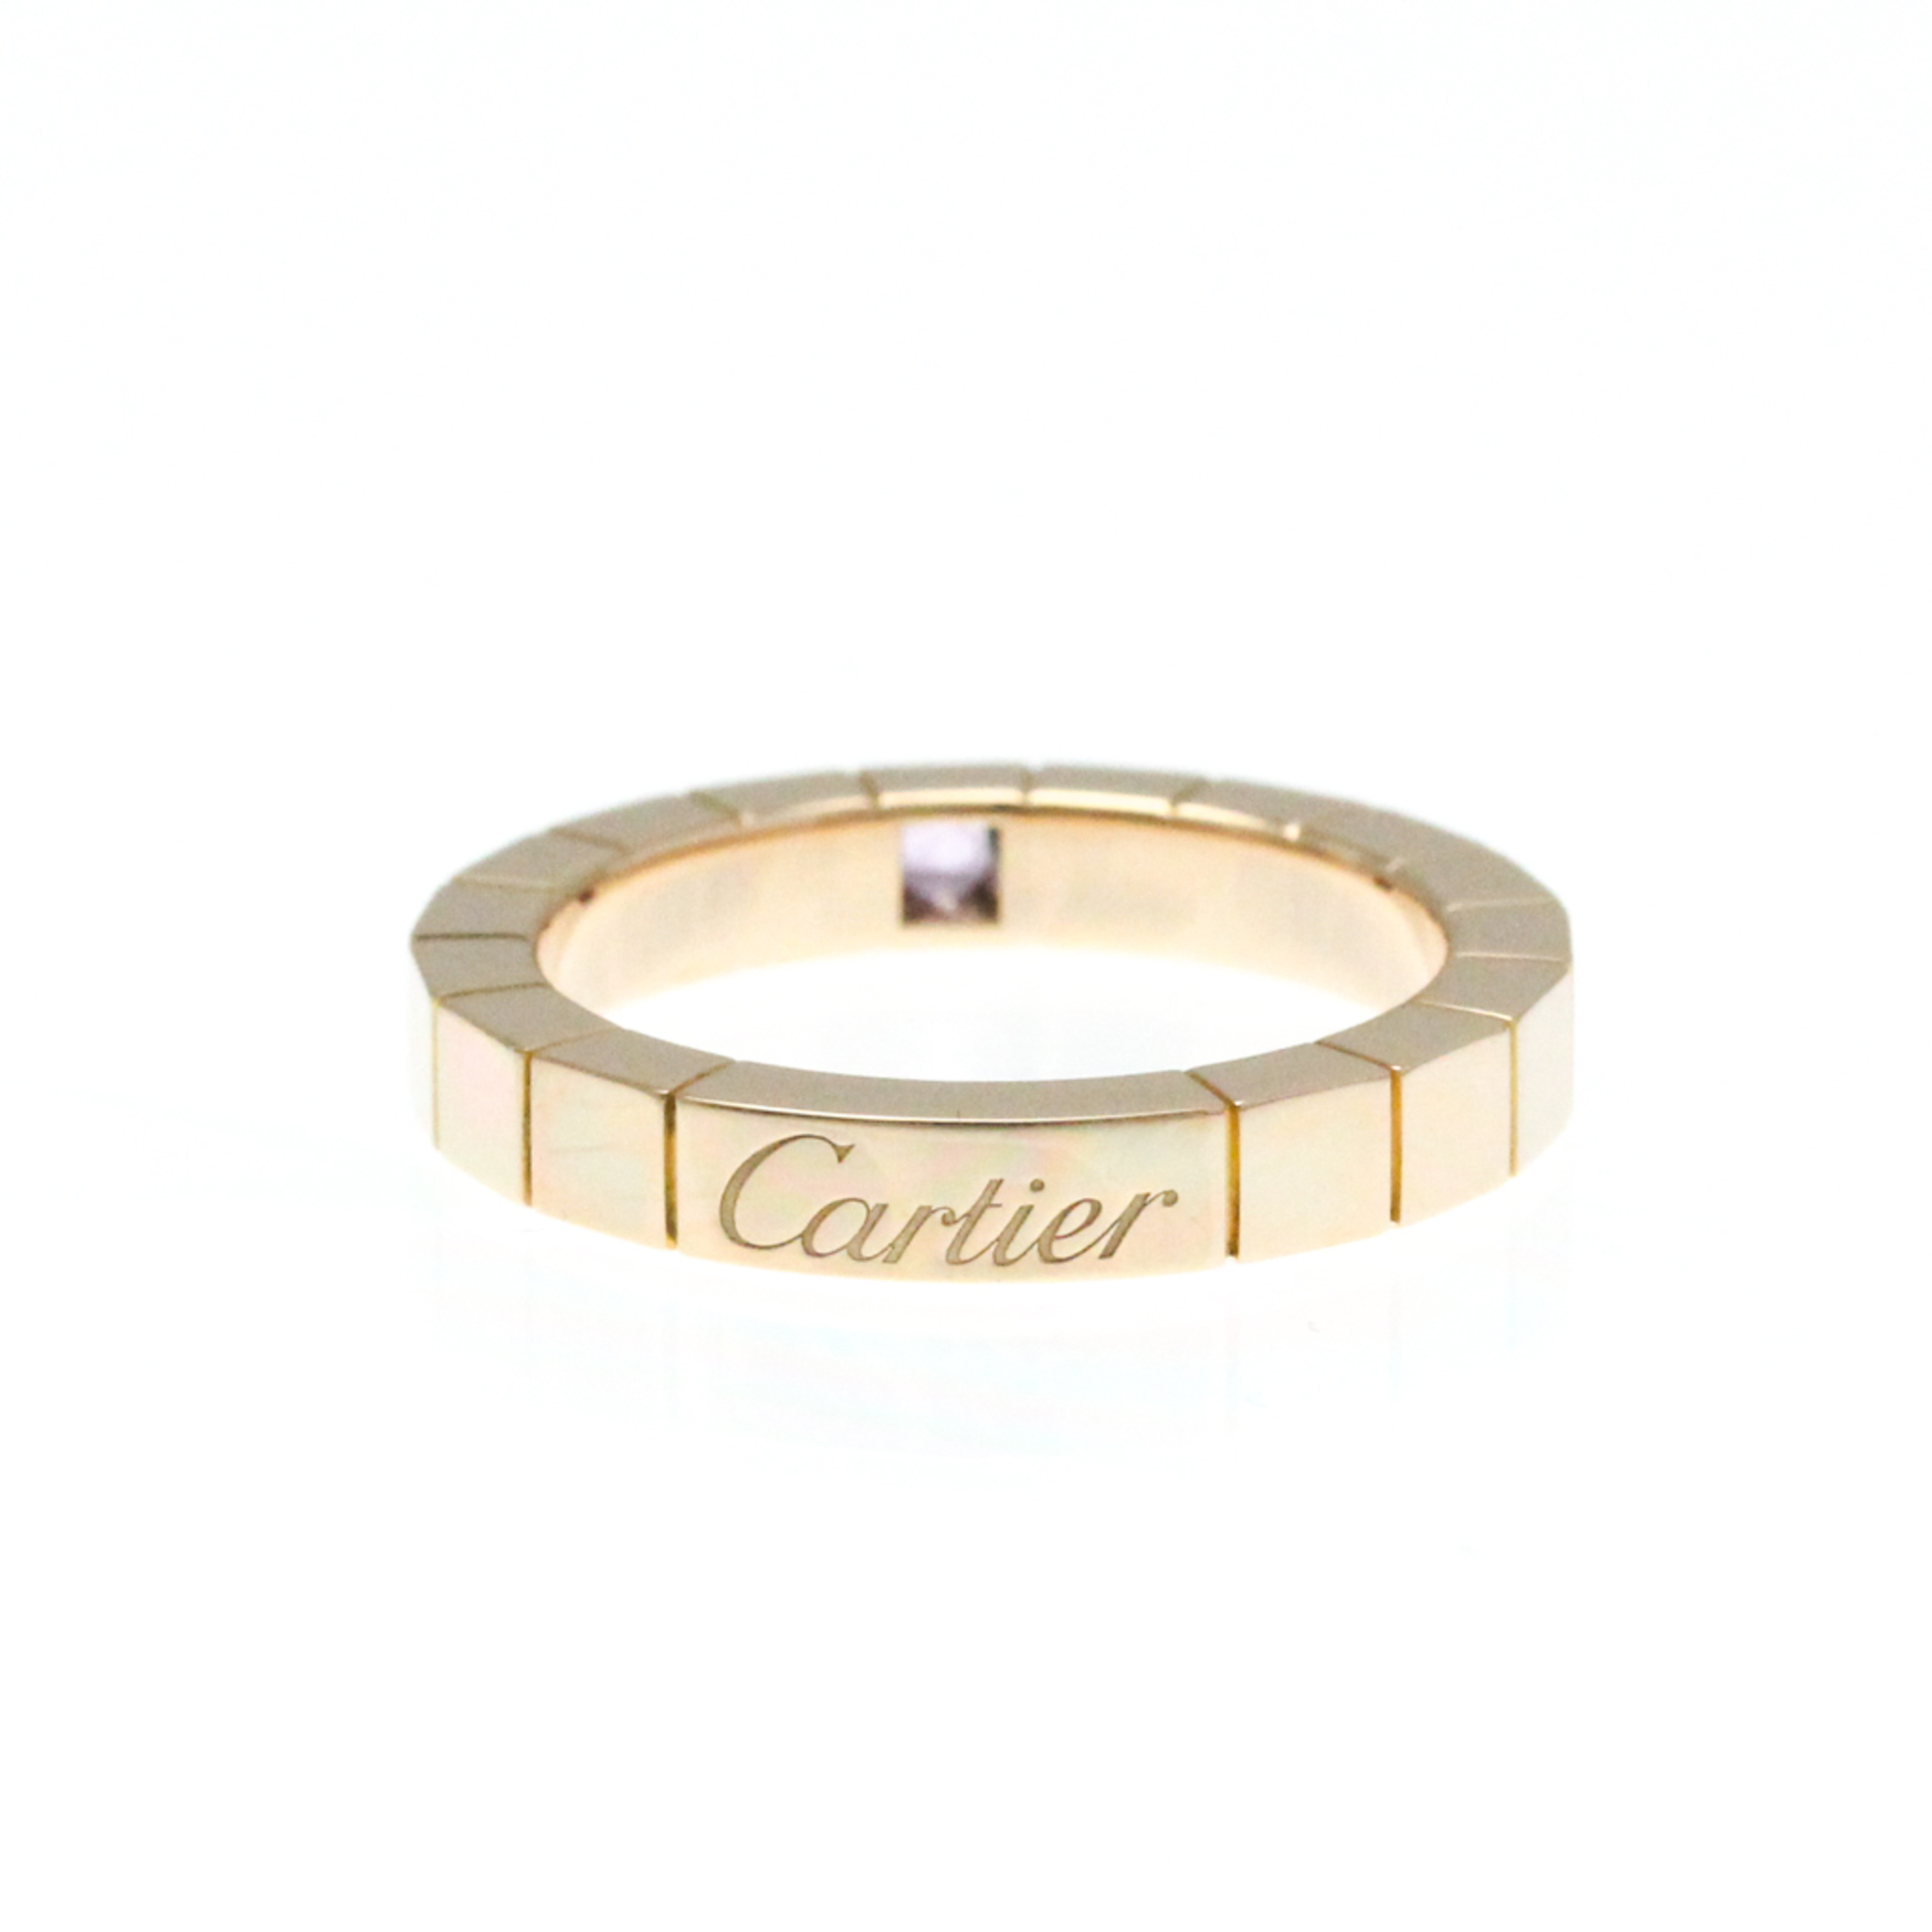 カルティエ(Cartier) ラニエール K18ピンクゴールド(K18PG) ファッション サファイア バンドリング ピンクゴールド(PG)